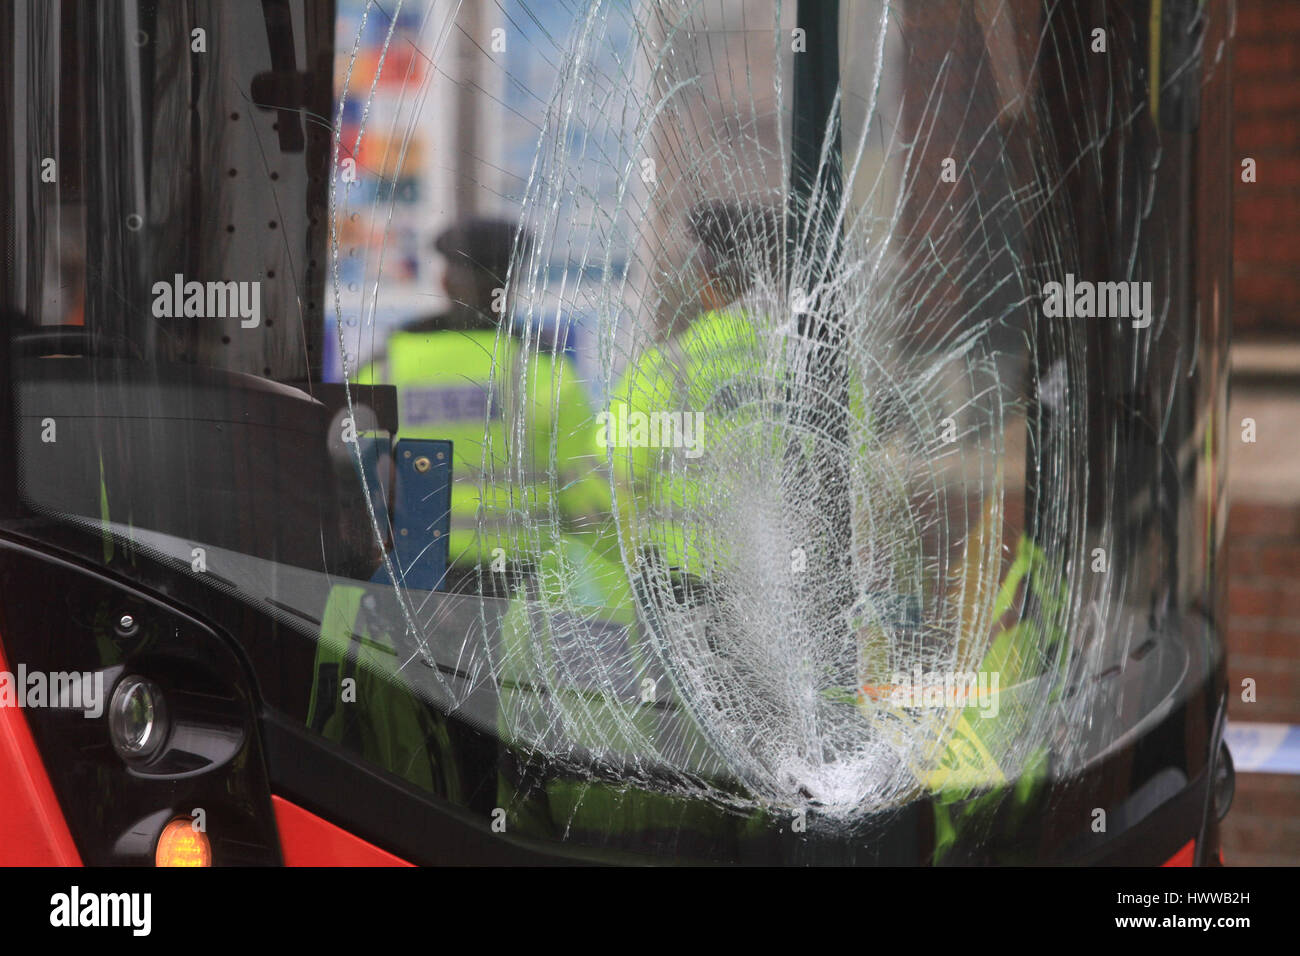 Londres, Royaume-Uni. Mar 23, 2017. Un piéton a été heurté par un bus se déplaçant sur Lambeth Road Crédit : Westminster amer ghazzal/Alamy Live News Banque D'Images